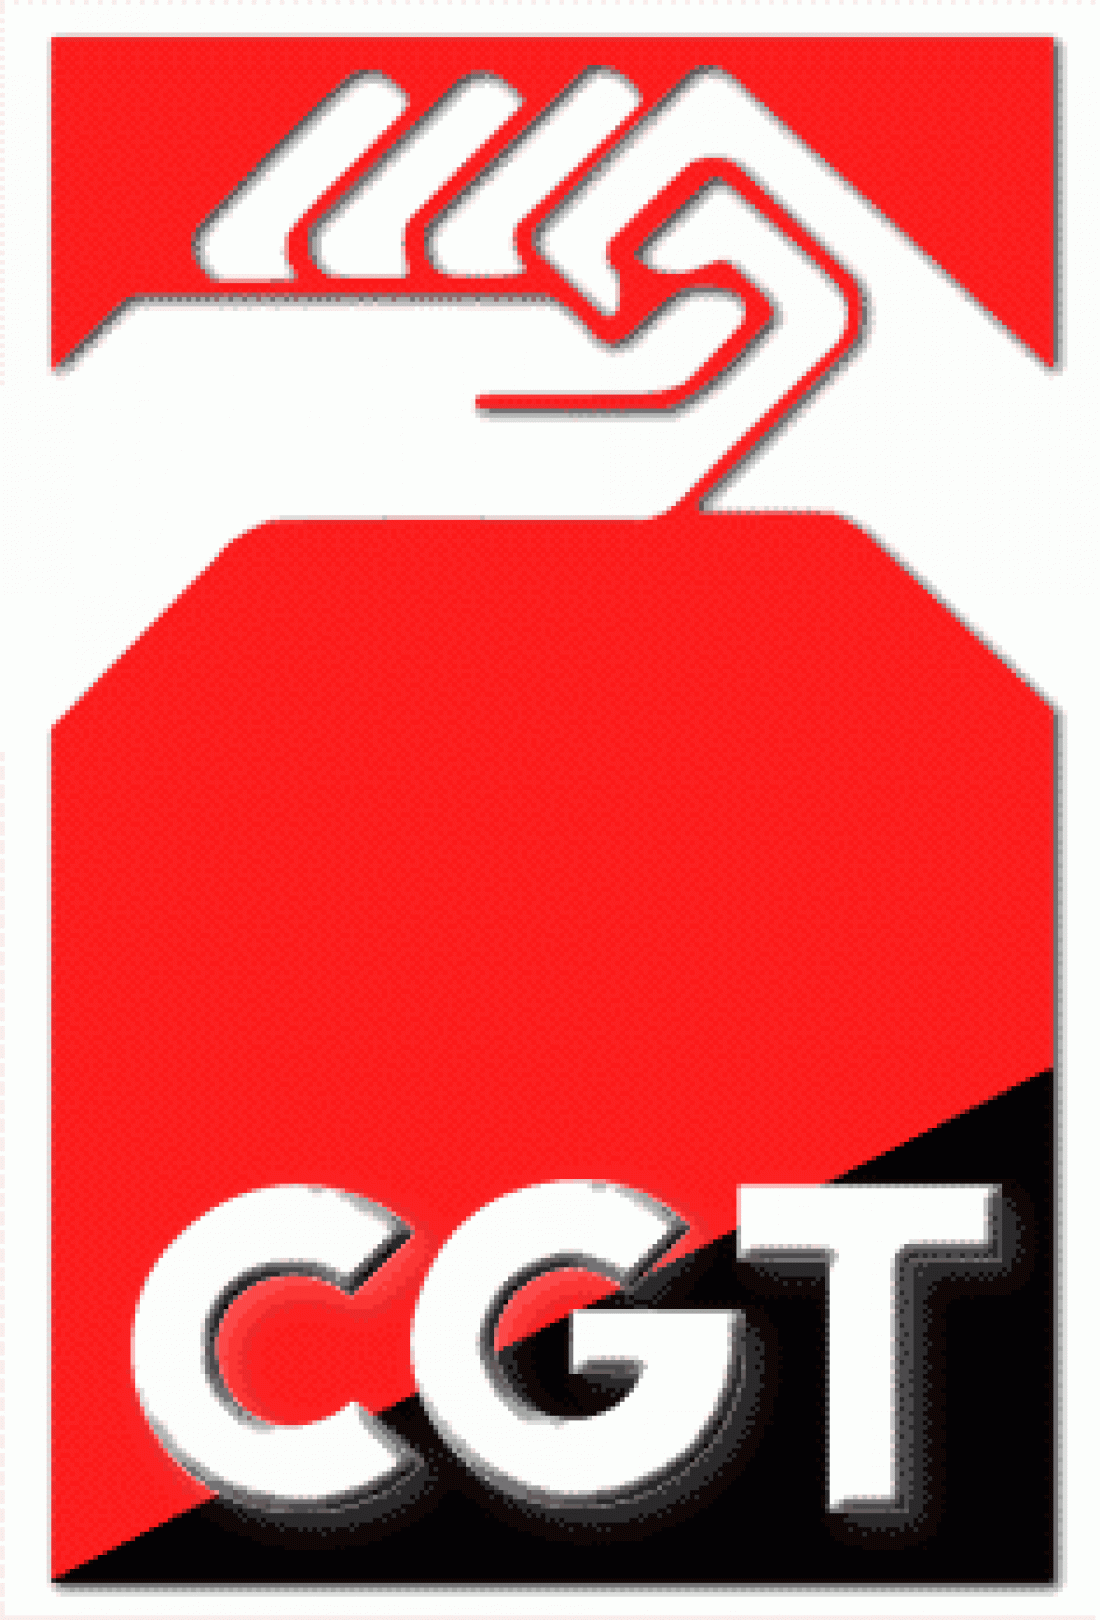 CGT convoca Congreso Extraordinario para debatir la próxima Huelga General